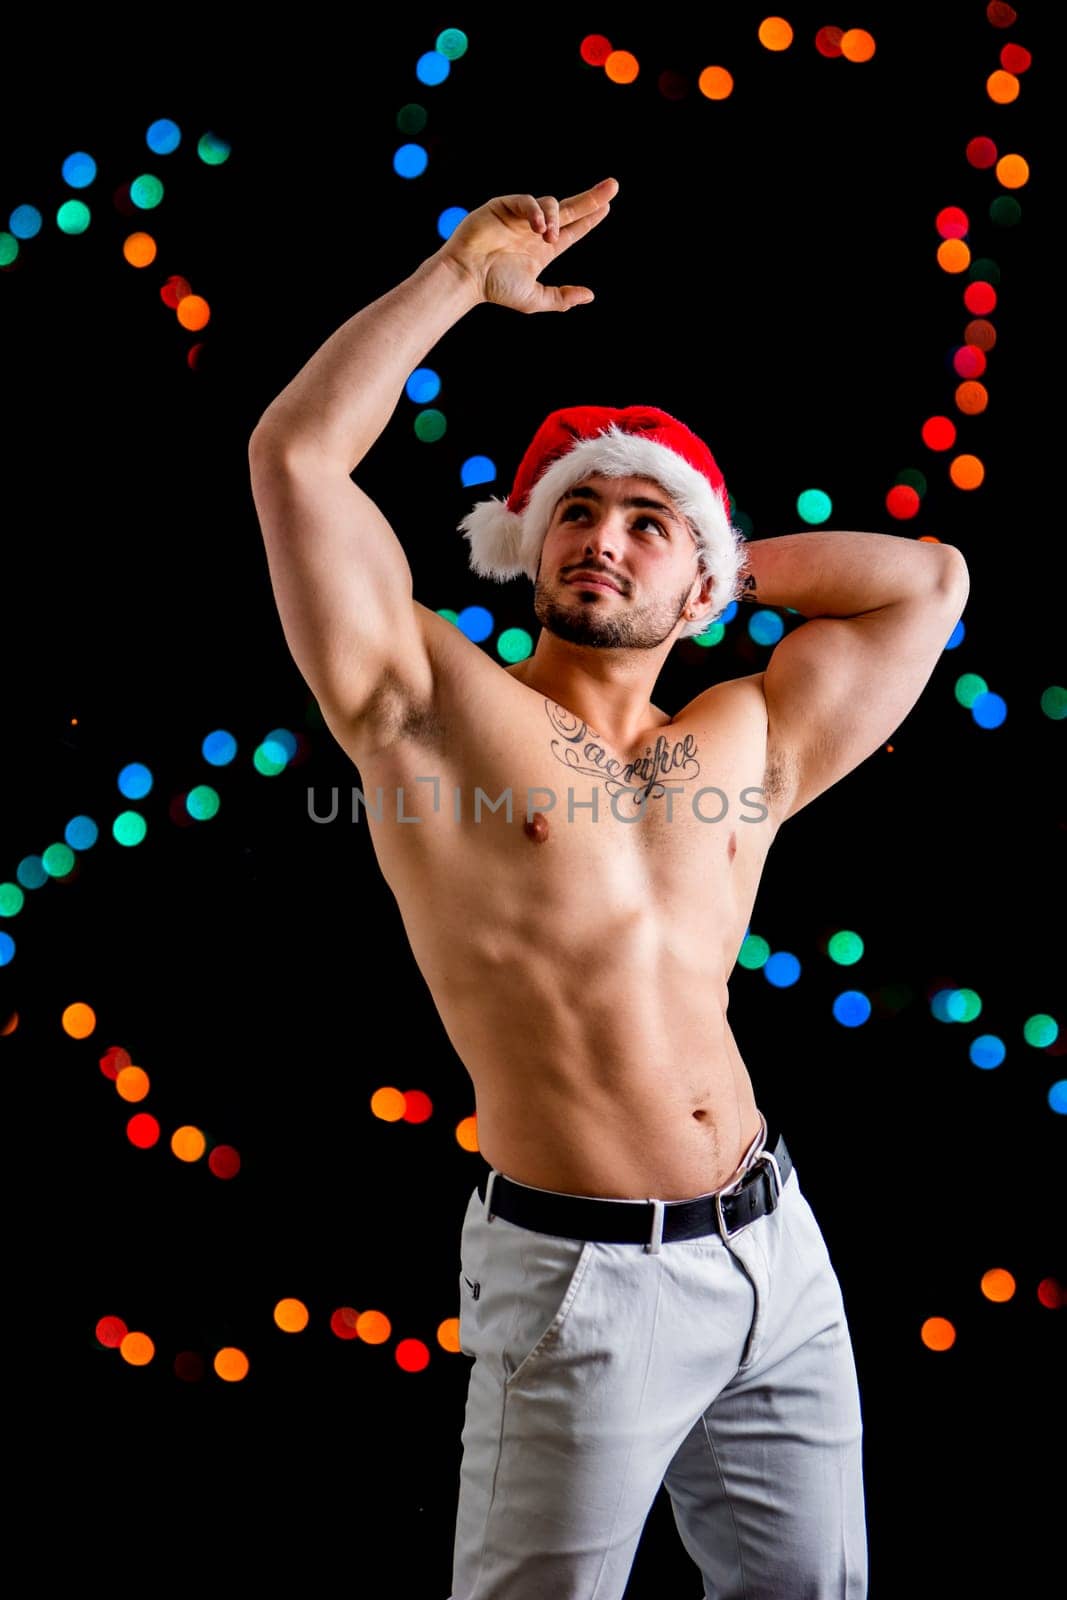 A shirtless man wearing a santa claus hat